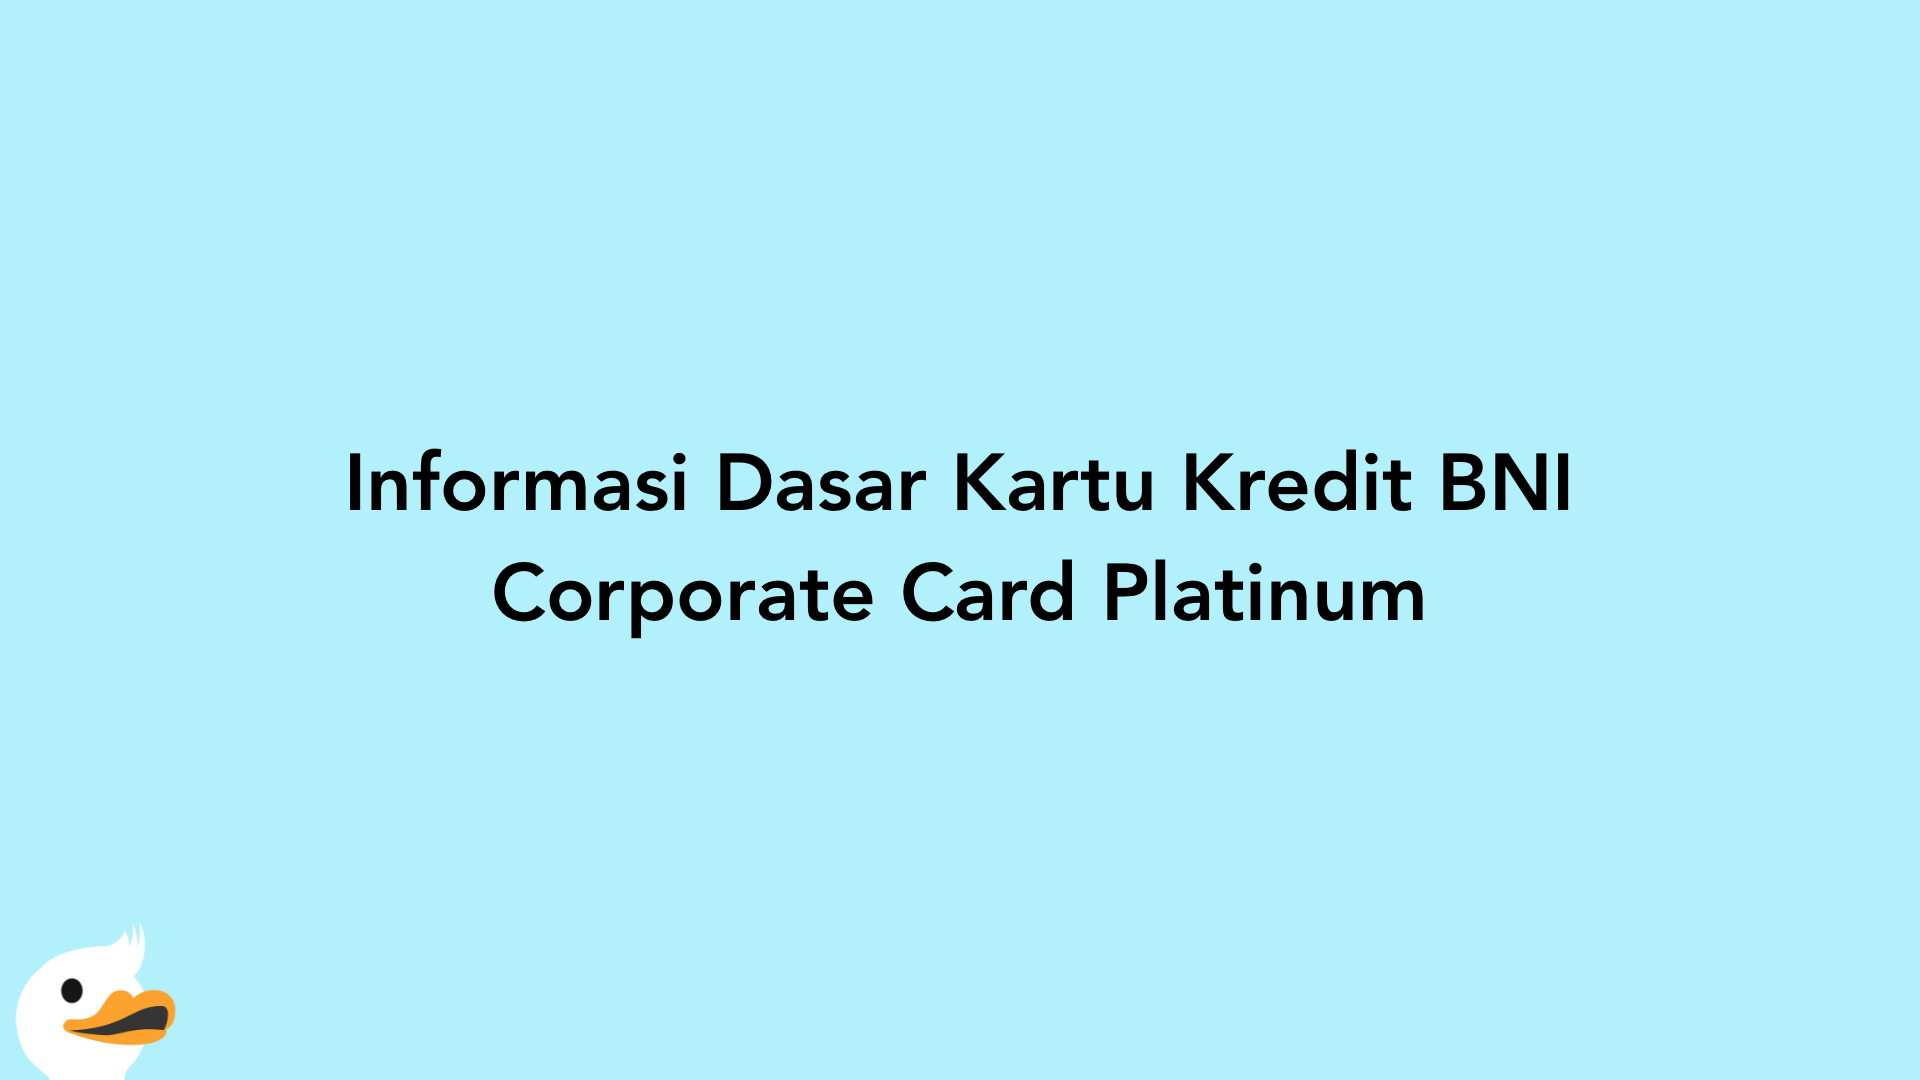 Informasi Dasar Kartu Kredit BNI Corporate Card Platinum